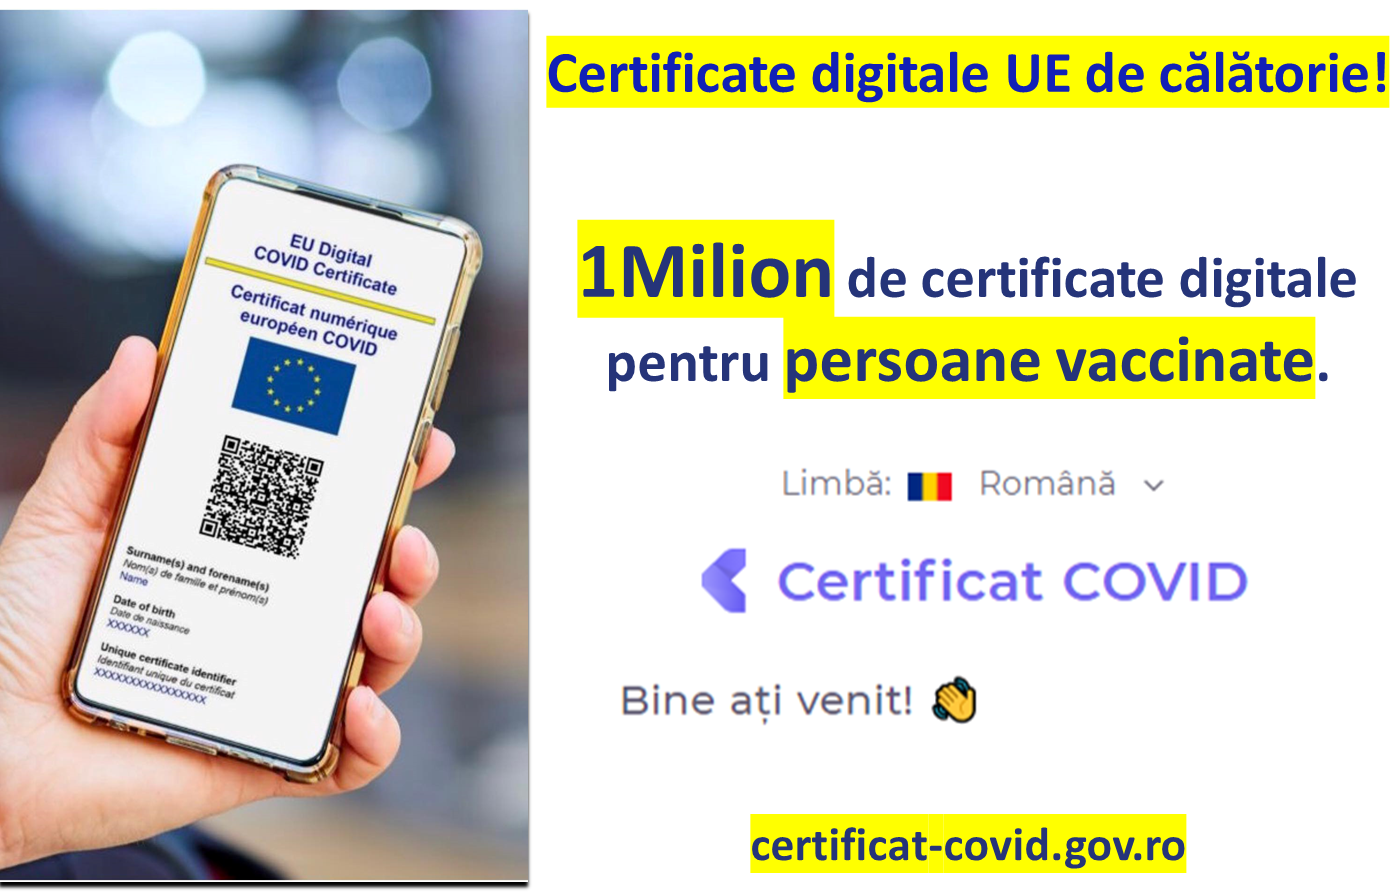 CNCAV: 1.001.001 certificate digitale descărcate de persoanele vaccinate